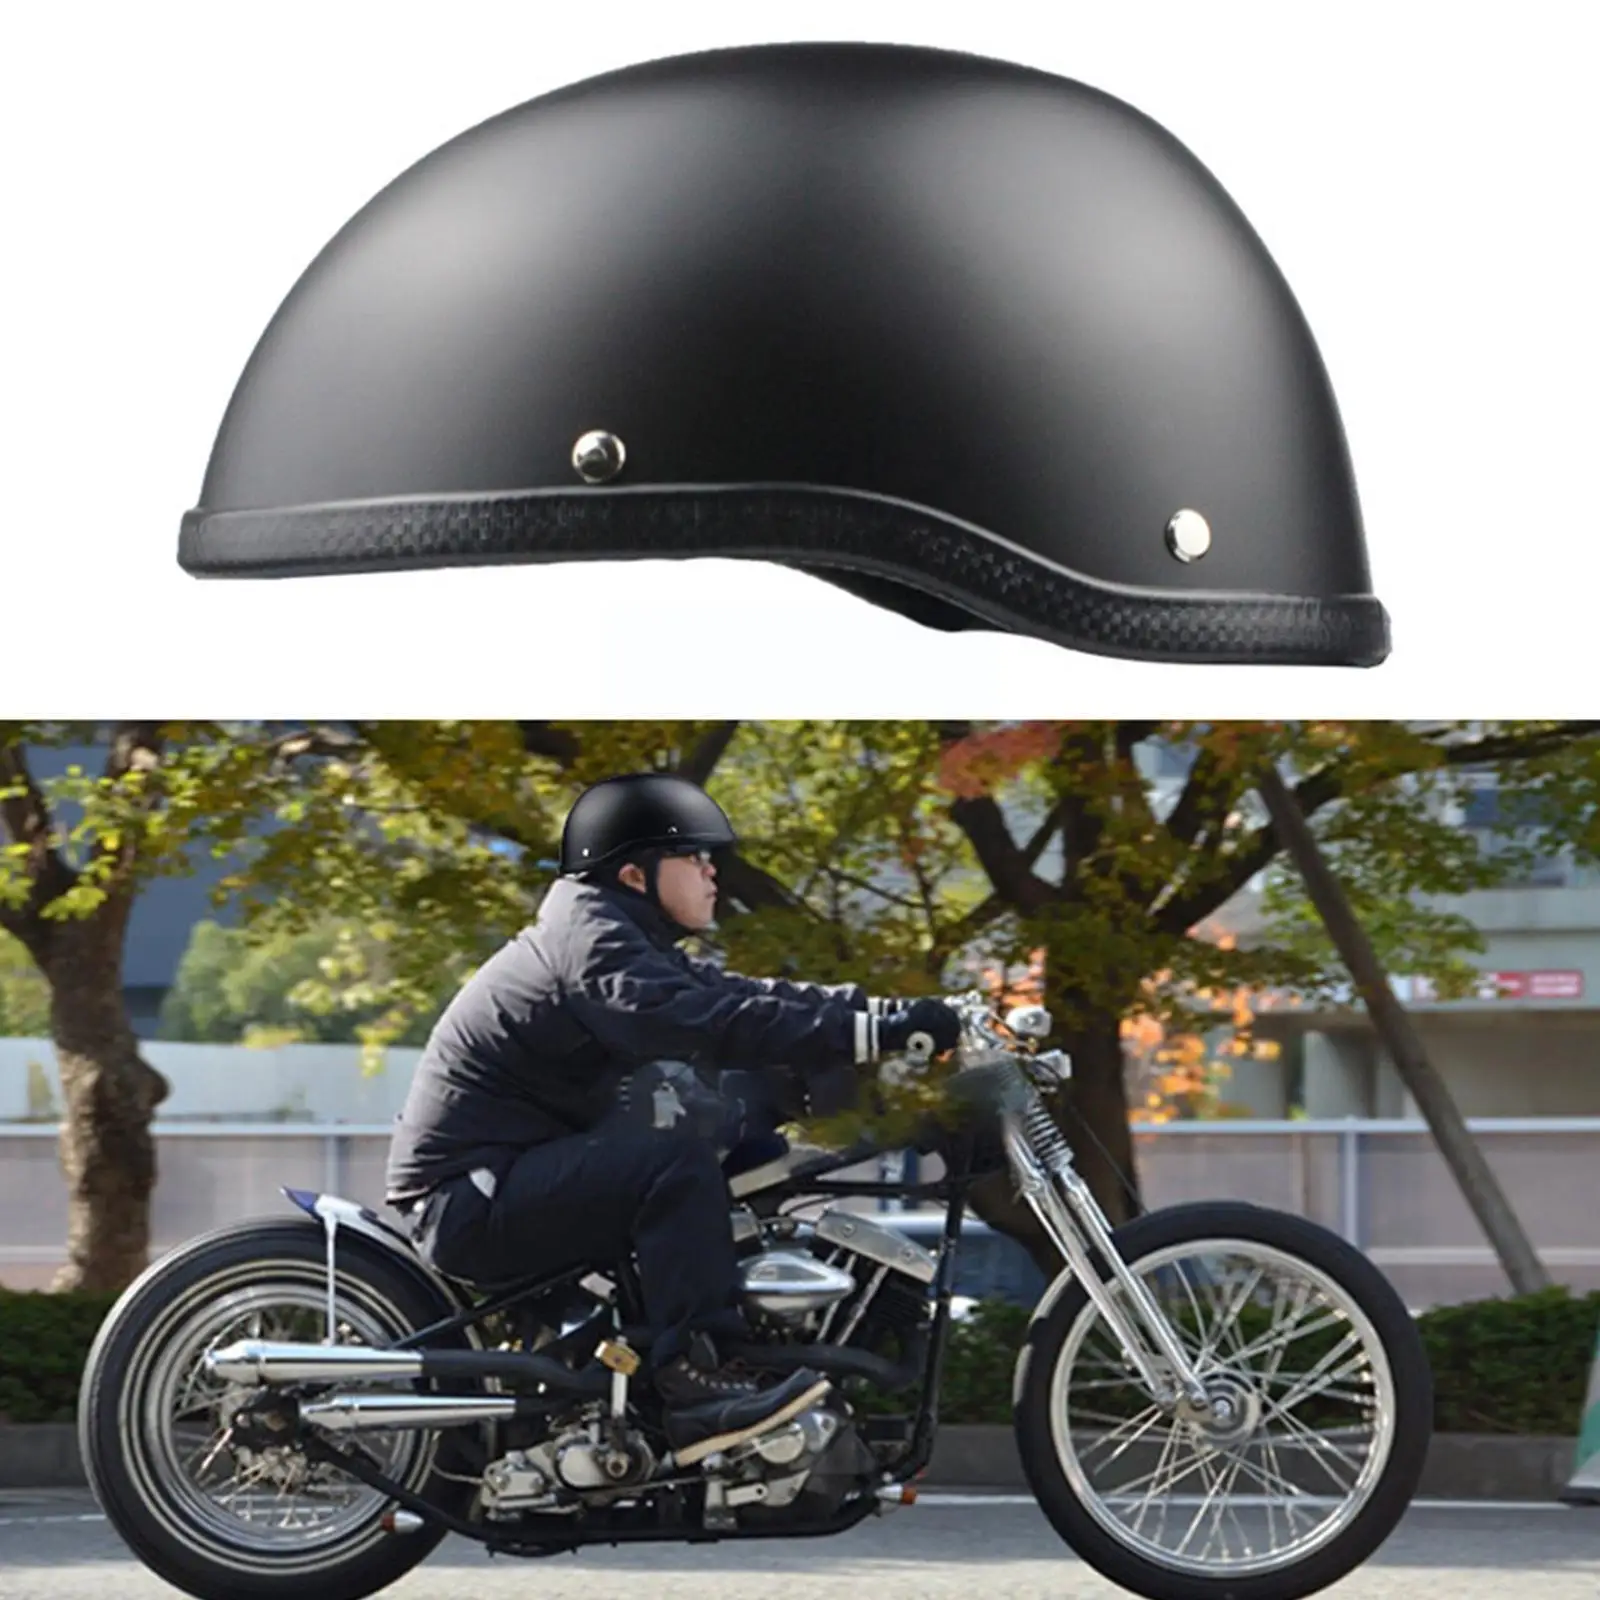 

Мотоциклетный шлем для Harley Road King Softail Sporster 883, полулицевой Электрический мотоцикл, аксессуары для мотоциклов S4O7